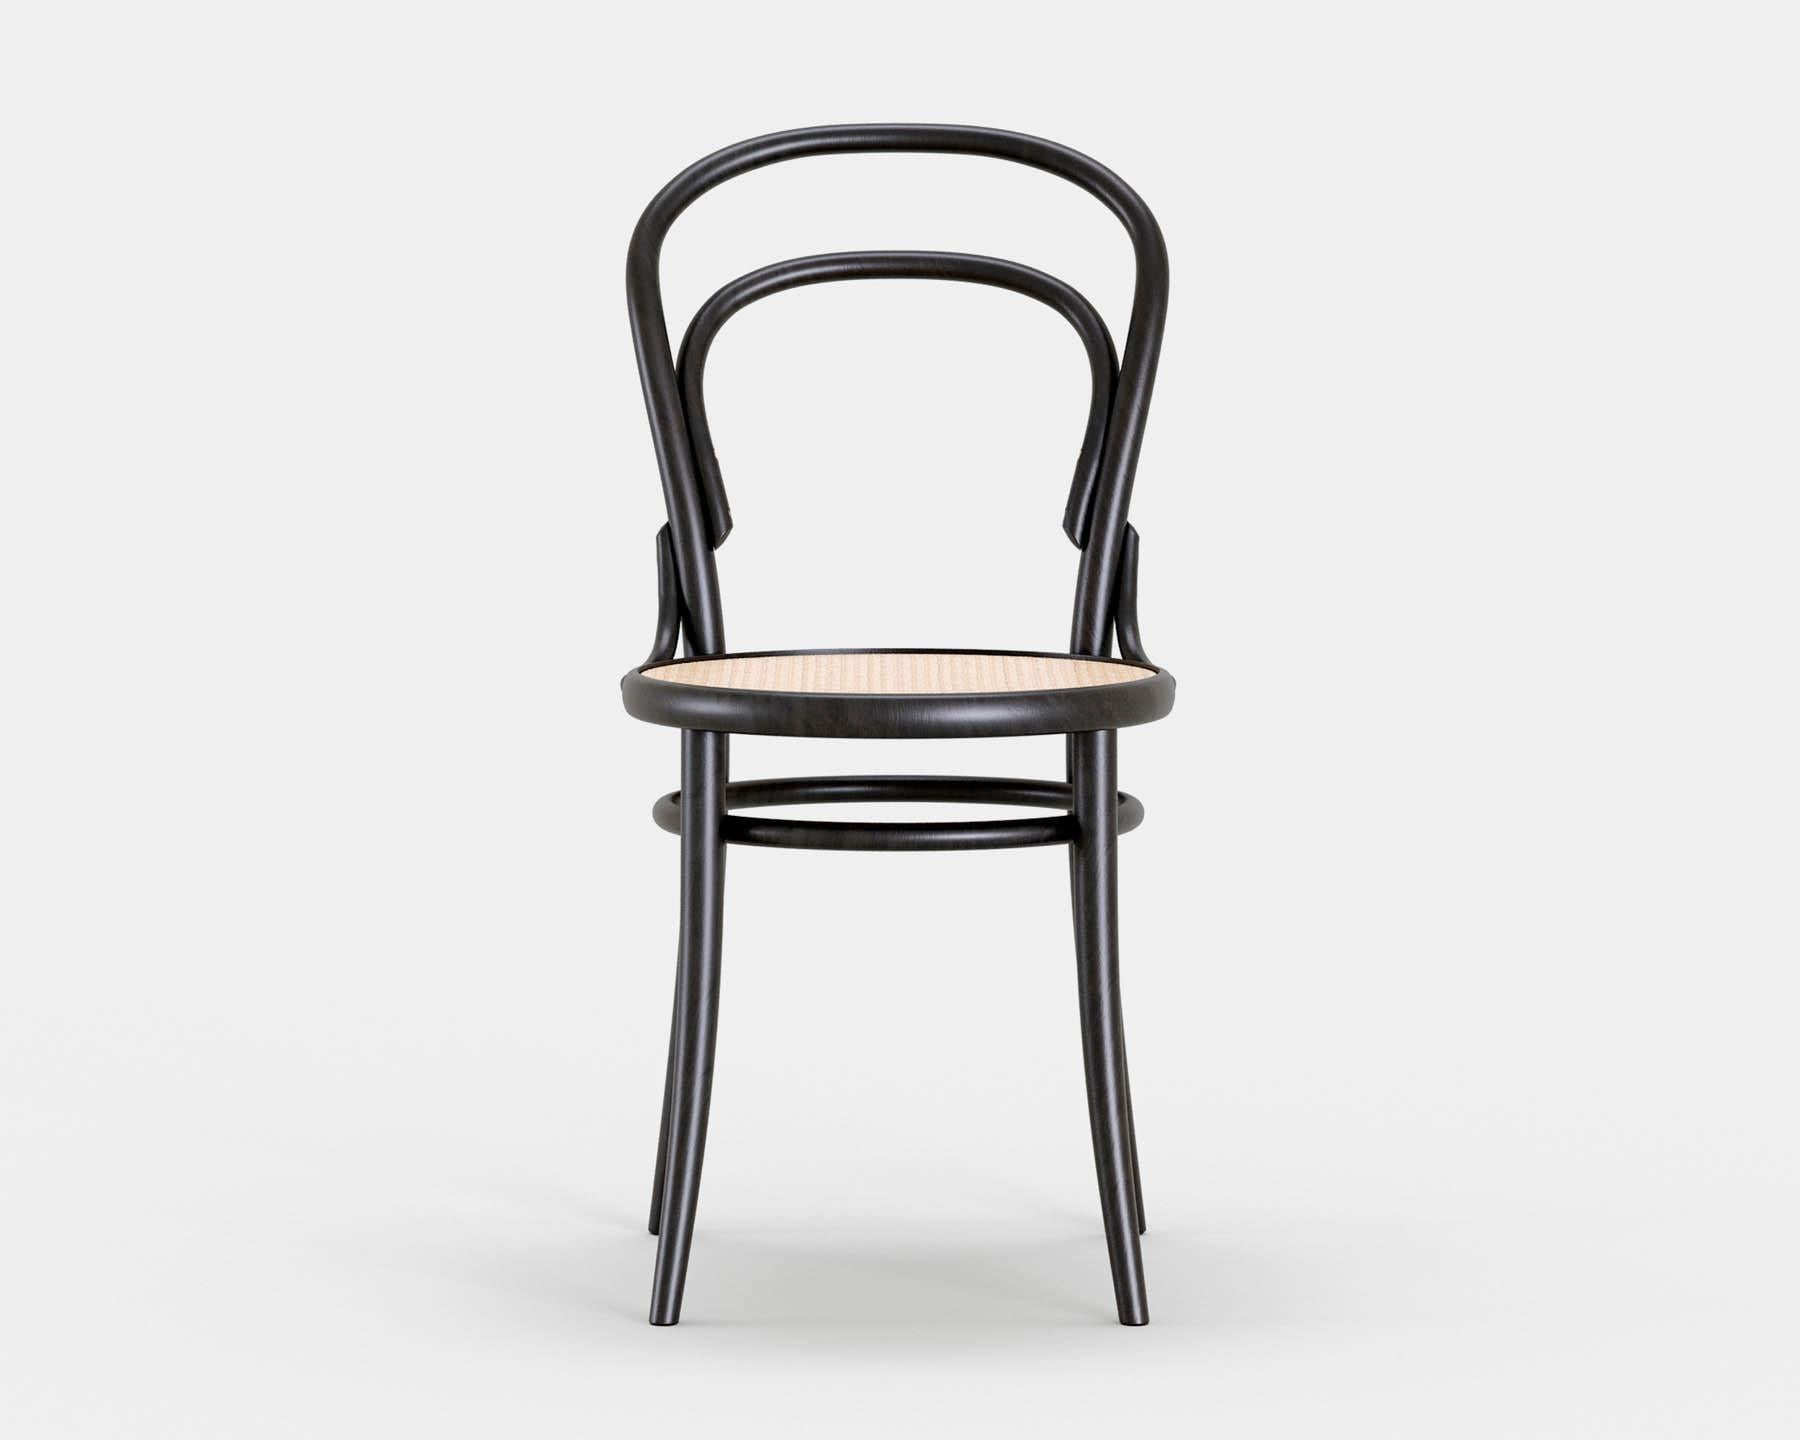 Stuhl Nr. 14
Der ikonische Bistrostuhl wurde 1869 von Michael Thonet entworfen und wird heute in der gleichen Manufaktur in der Tschechischen Republik von TON hergestellt. 

Holz: Buche massiv 
Ausführung: schwarz gebeizt
Sitz: Can